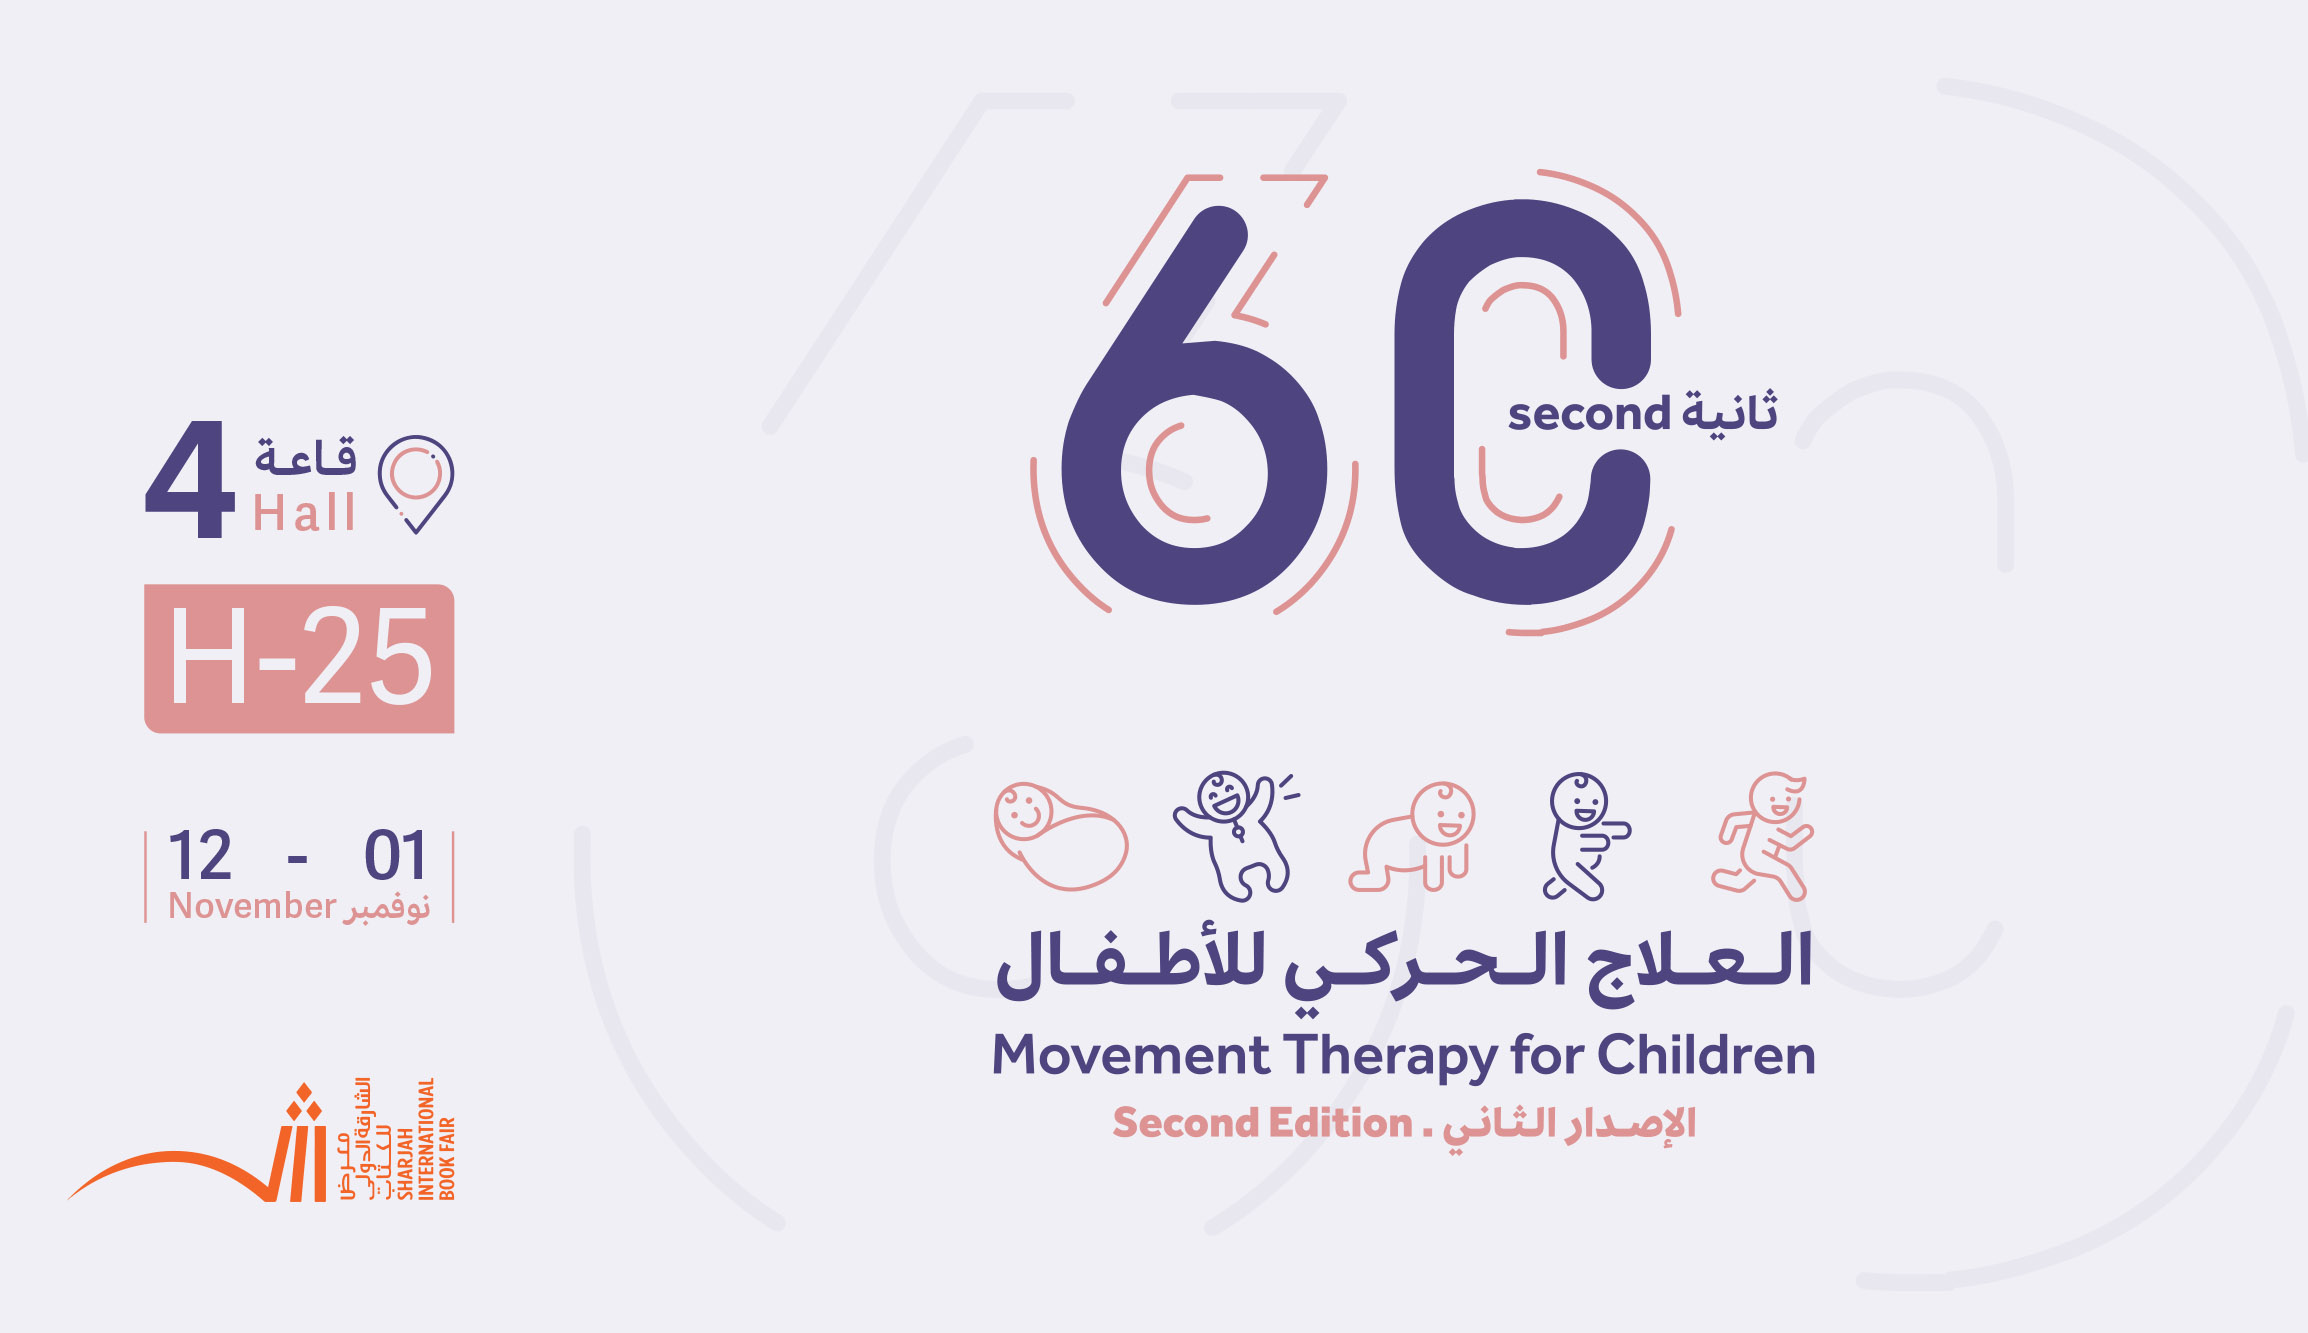 https://www.schs.ae/event-detail/slsl-60-thany-alsdar-althany-mn-alaalag-alhrky-llatfal" سلسلة 60 ثانية الإصدار الثاني من " العلاج الحركي للأطفال